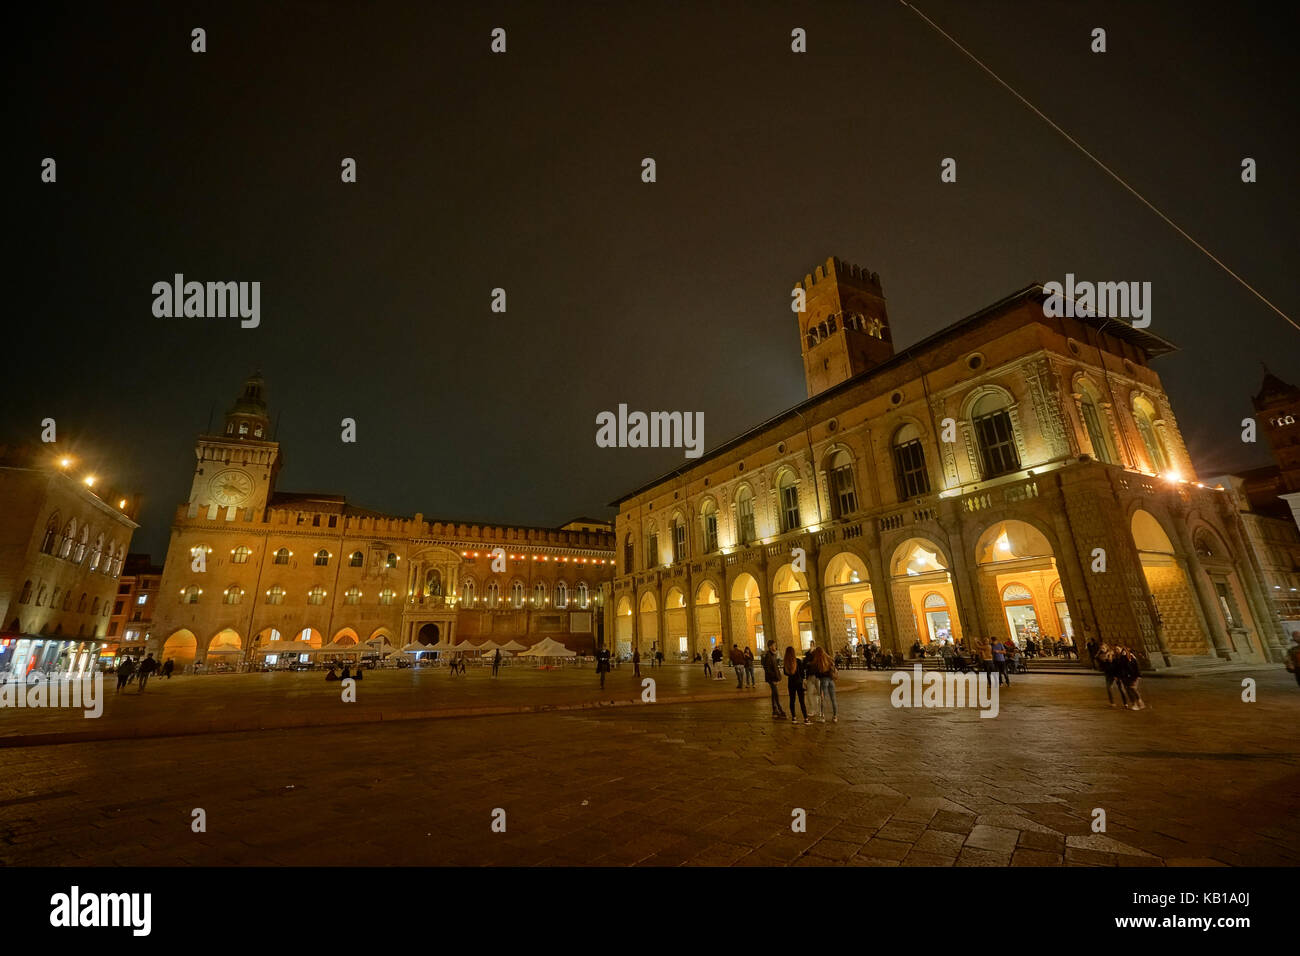 Ein Blick auf die Piazza Maggiore in Bologna. Aus einer Serie von Fotos in Italien. foto Datum: Freitag, 15. September 2017. Photo credit sollte r Stockfoto